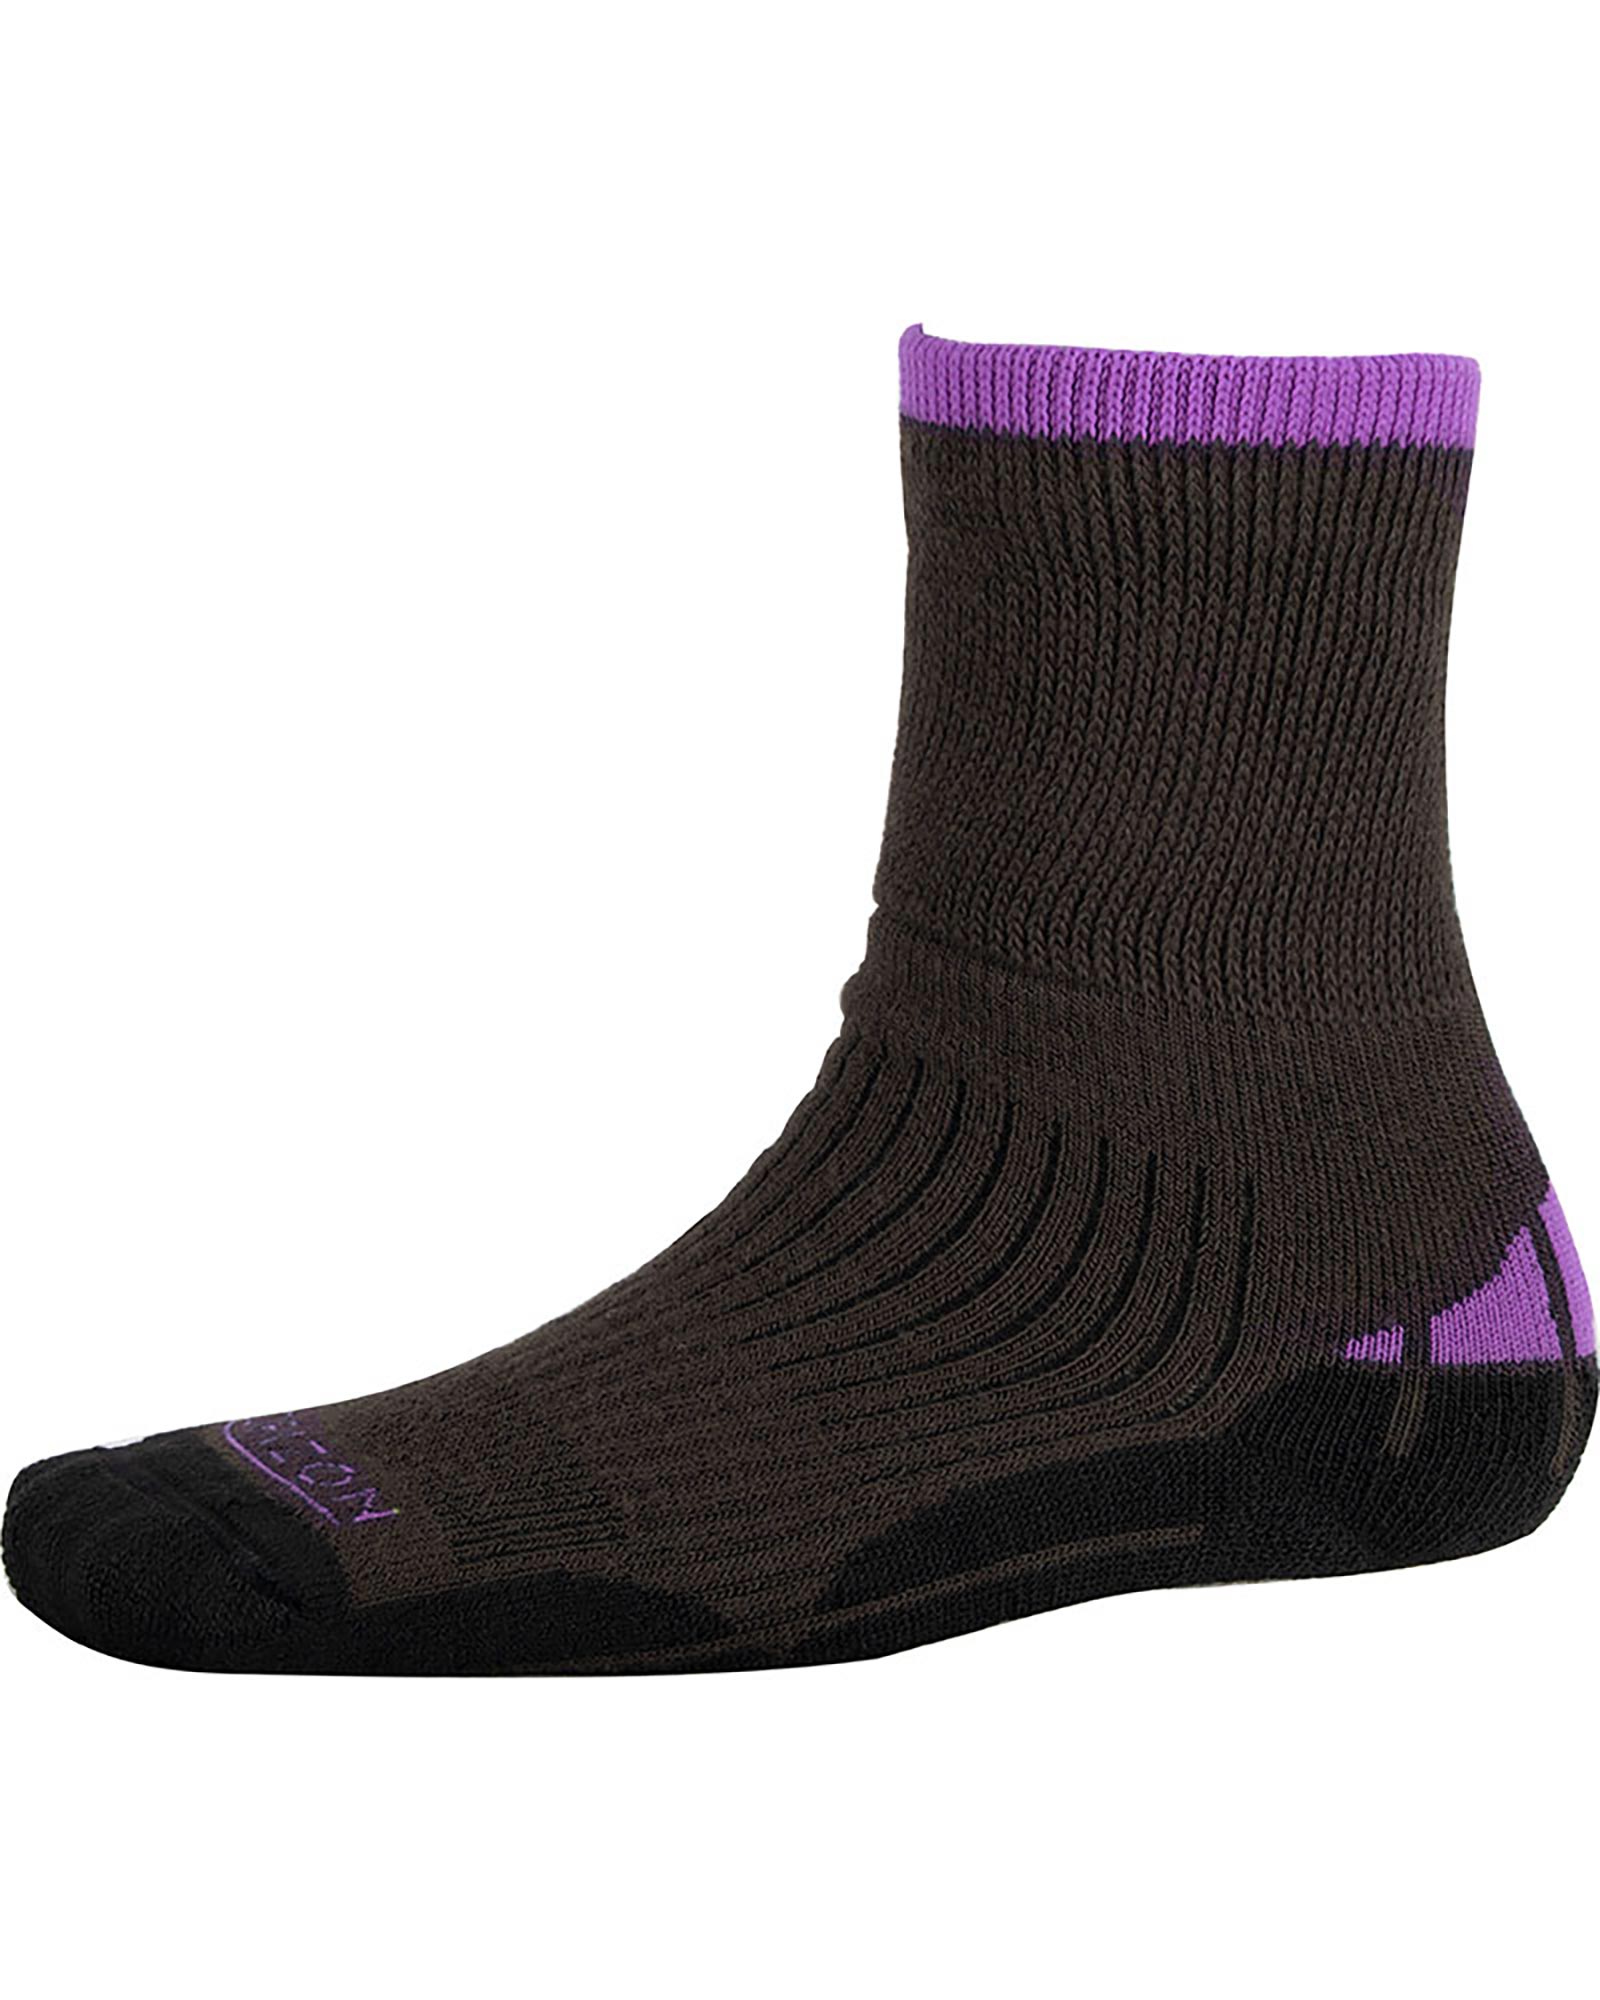 Ellis Brigham Hiker Coolmax Kids’ Socks - Charcoal/Violet L